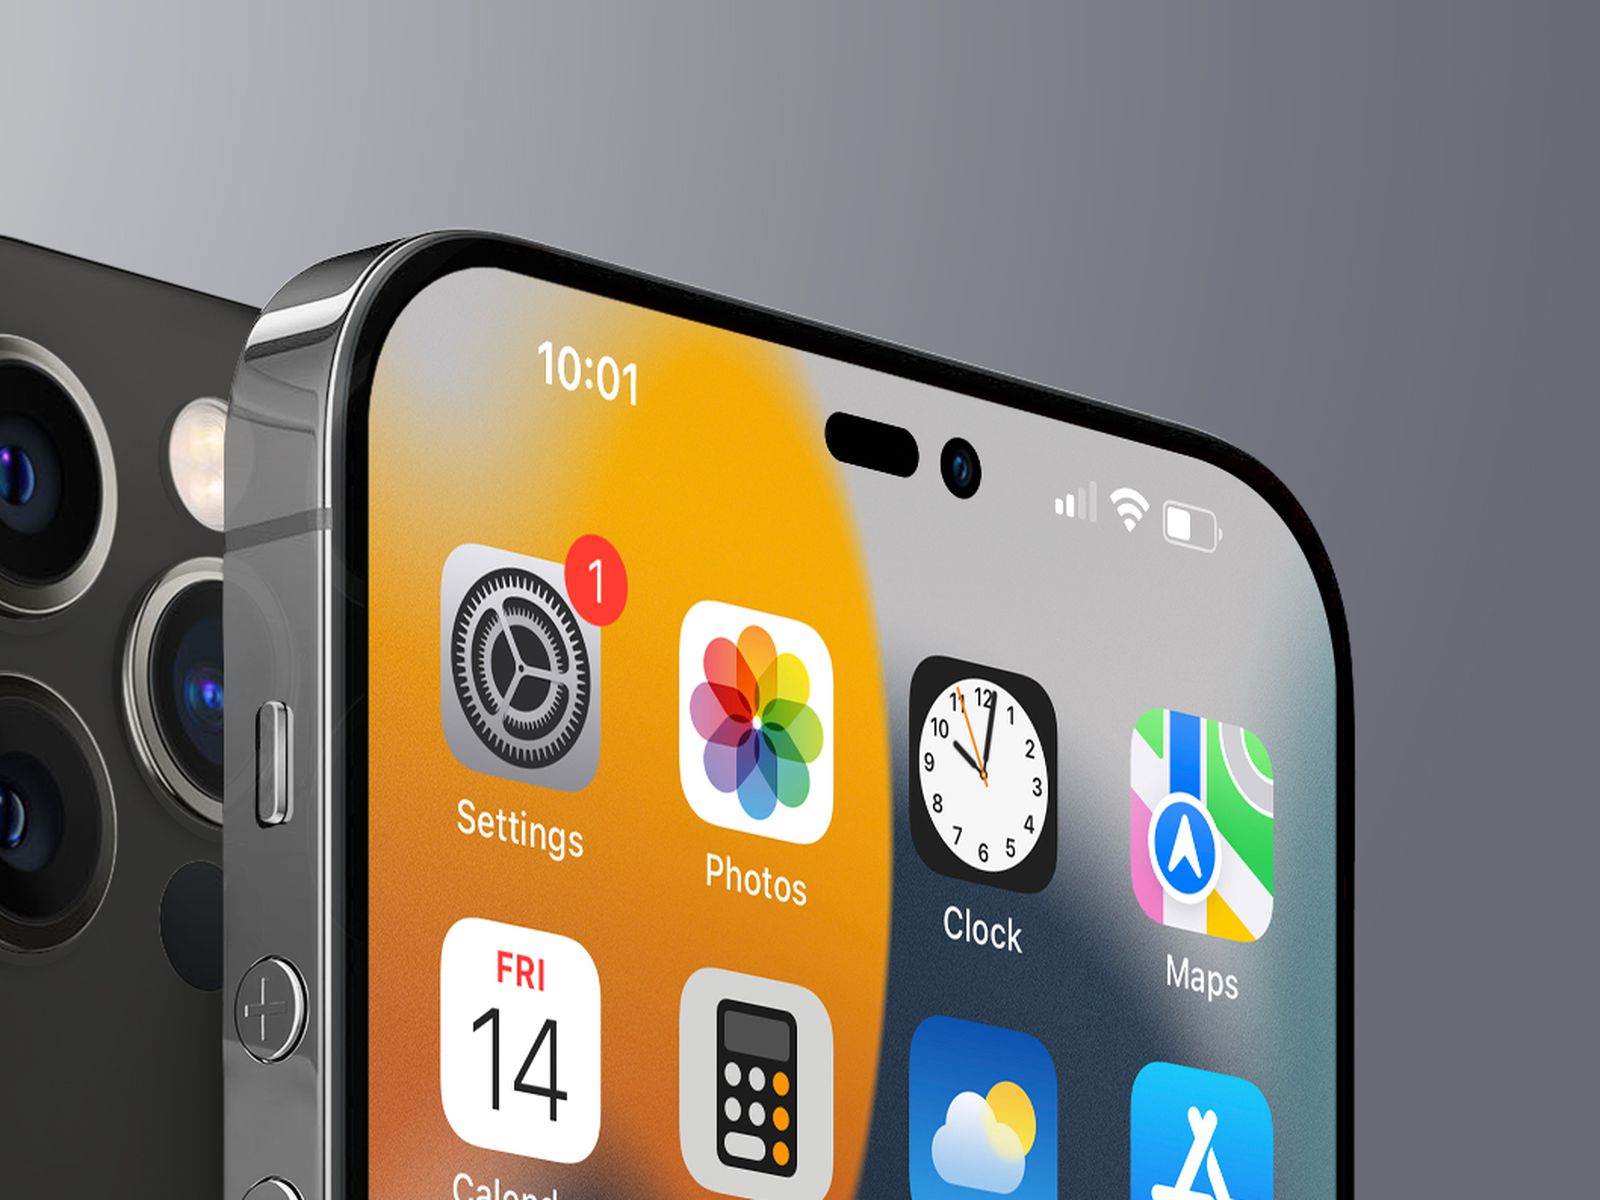 ProMotion và iPhone 14 Pro sẽ cùng chinh phục trái tim của bạn. Với màn hình độ phân giải cao và hiệu suất hoạt động tốt hơn, iPhone 14 Pro có thể giúp bạn làm việc hiệu quả hơn và thưởng thức các nội dung giải trí đặc sắc hơn. Hãy cùng khám phá những chức năng thú vị của ProMotion và iPhone 14 Pro ngay hôm nay!